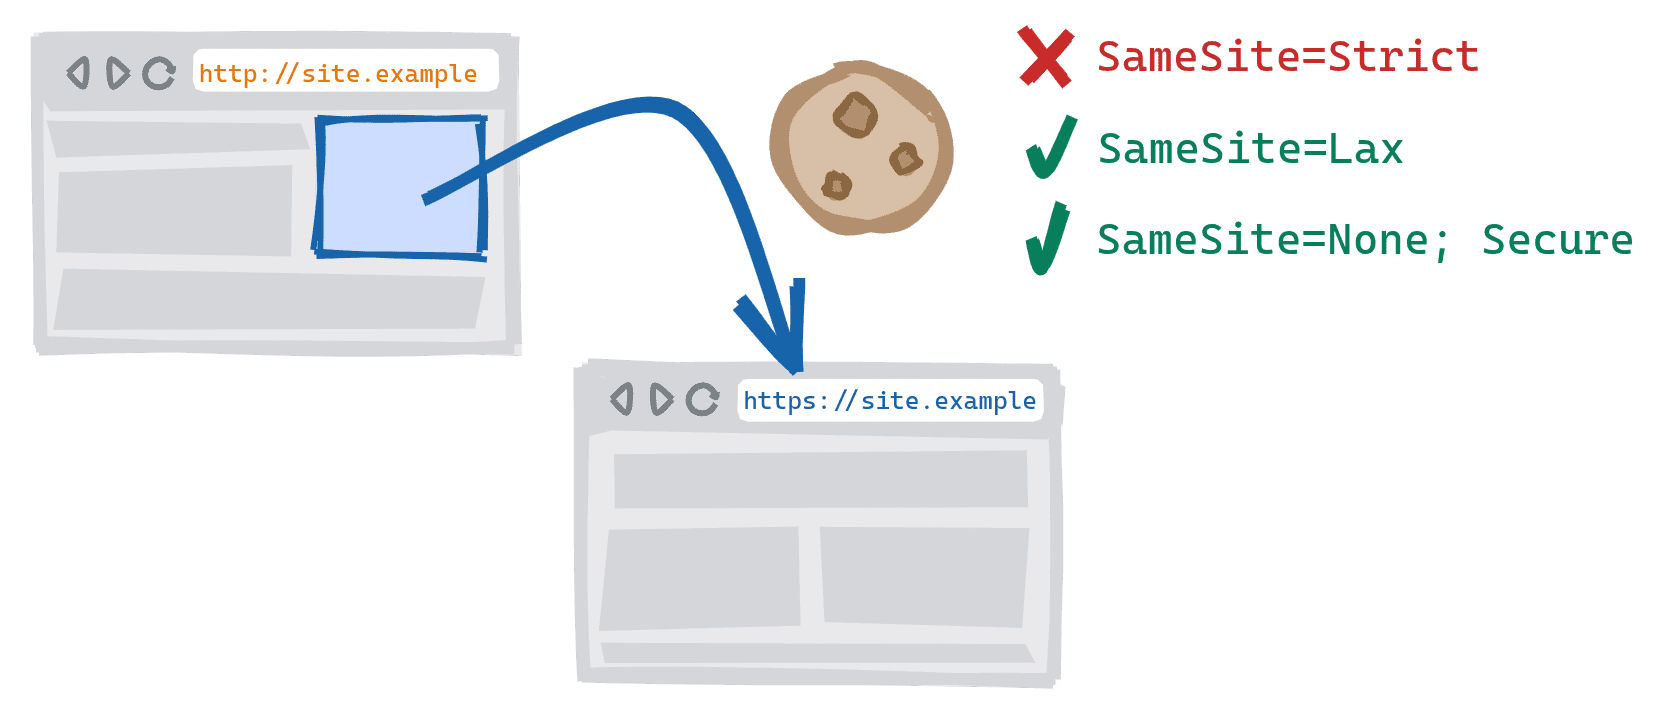 Eine schemaübergreifende Navigation, die ausgelöst wird, wenn ein Link in der unsicheren HTTP-Version einer Website zur sicheren HTTPS-Version folgt. SameSite=Strict Cookies blockiert, SameSite=Lax und SameSite=None; Sichere Cookies sind zulässig.